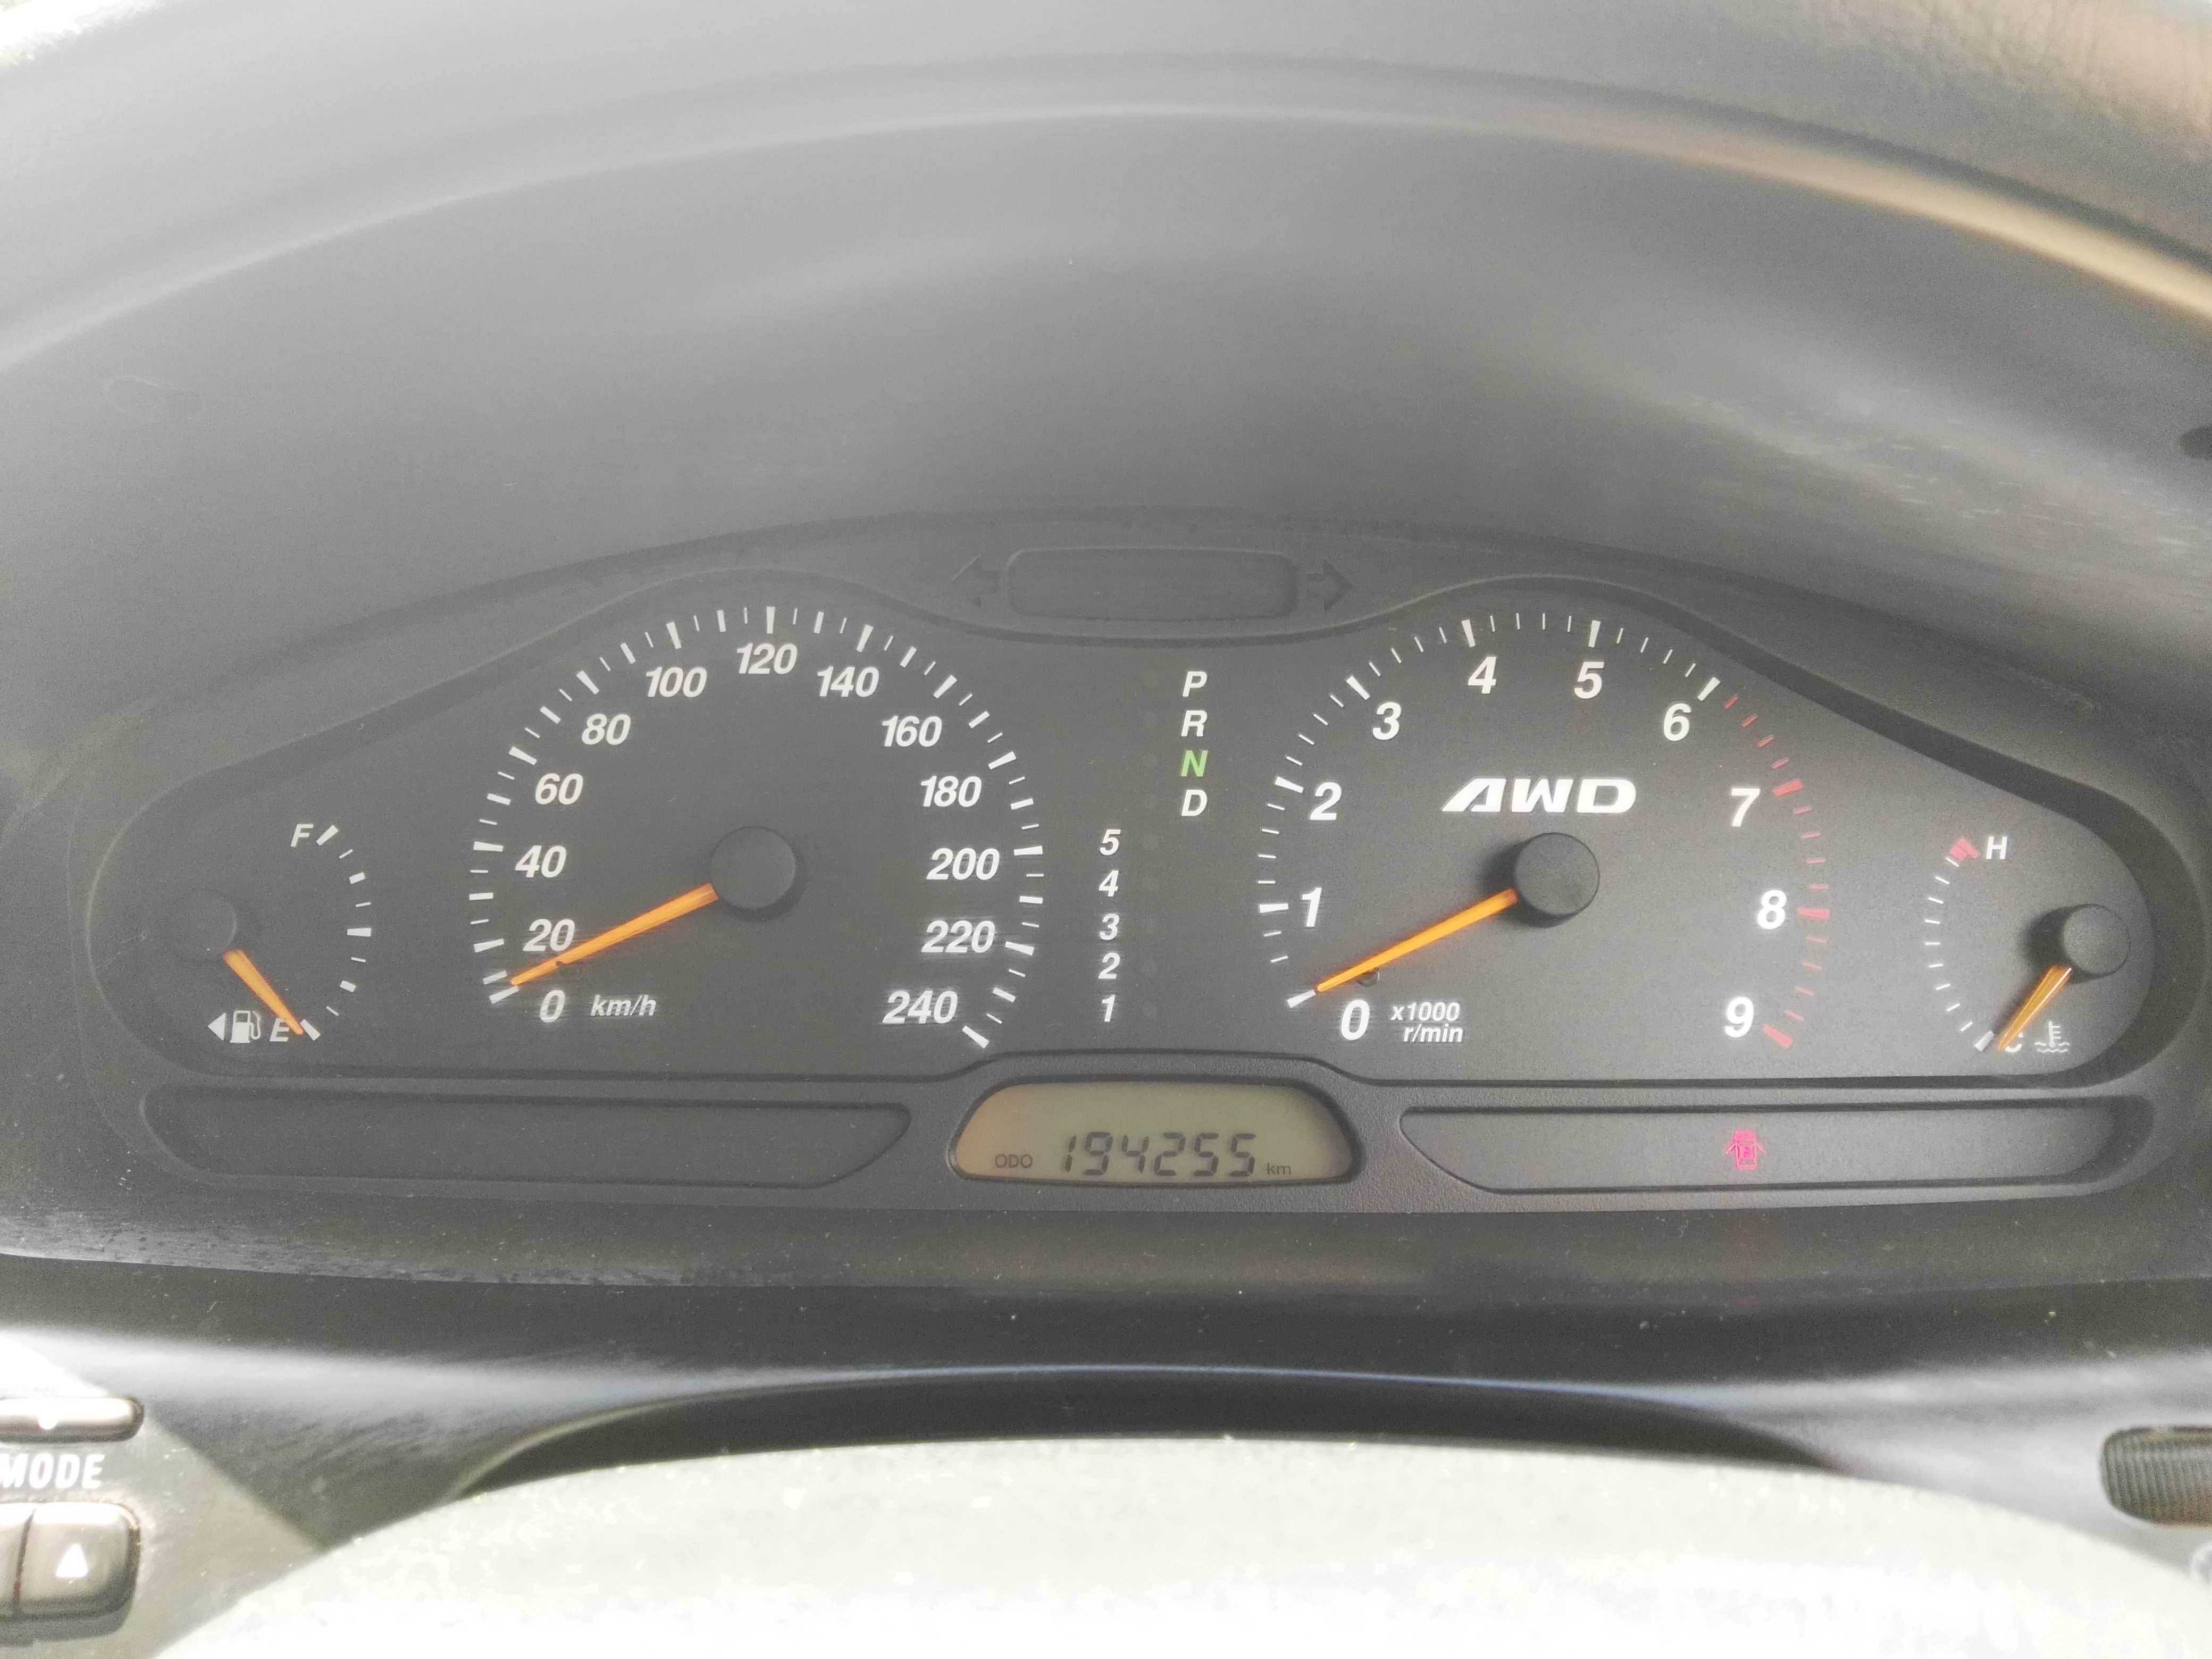 2003 Mitsubishi Magna AWD TL